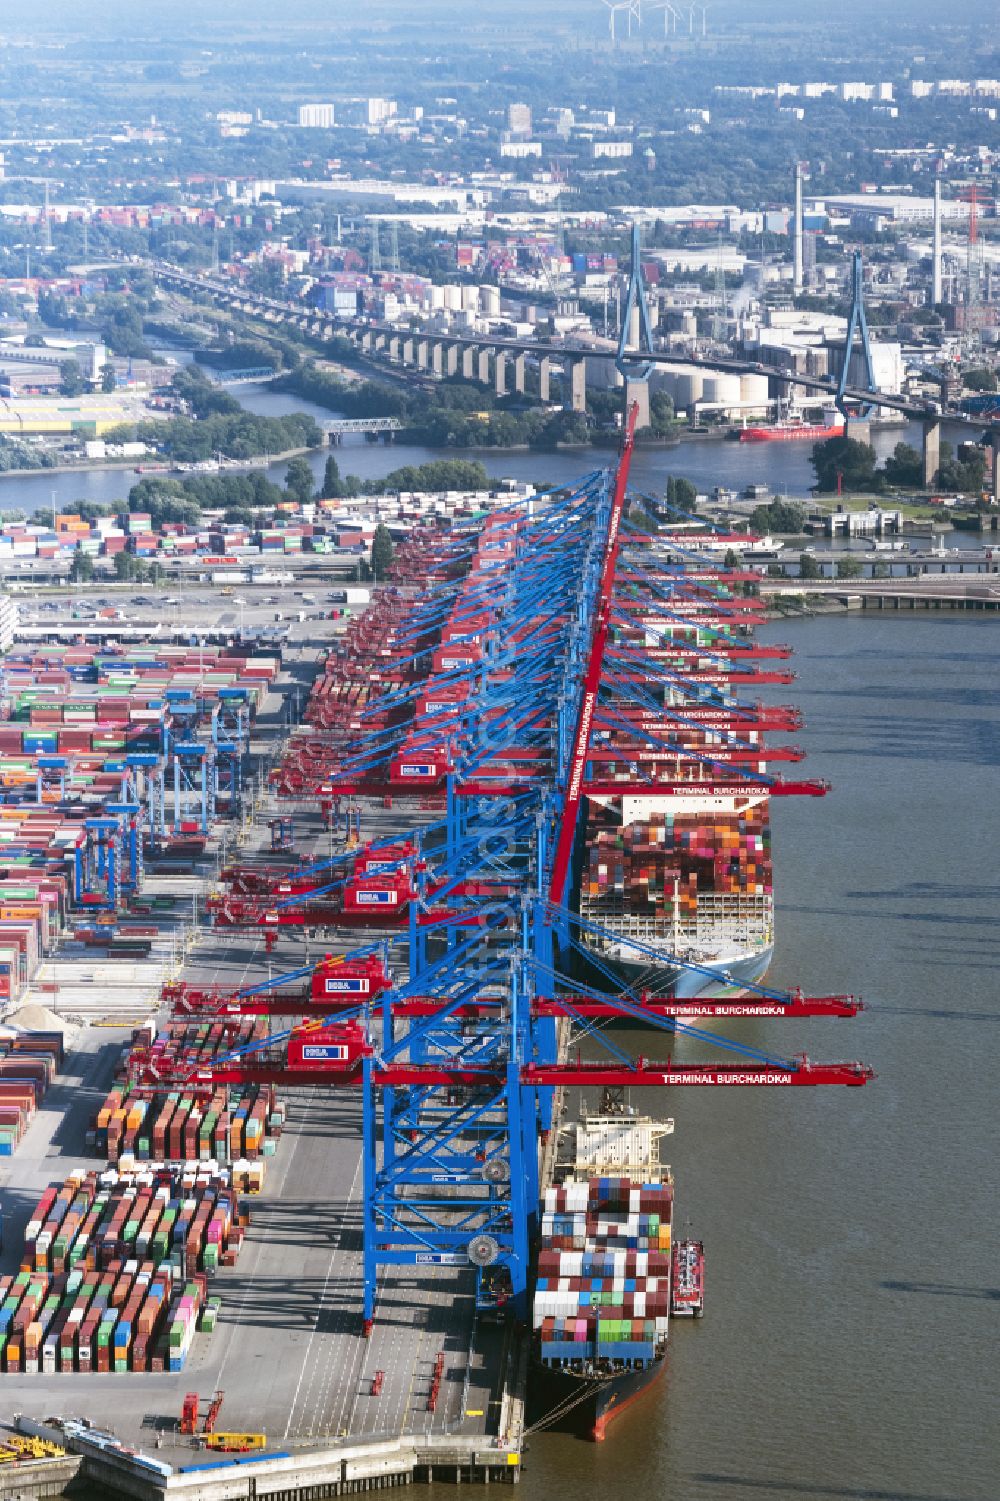 Hamburg von oben - HHLA Logistics Container Terminal Burchhardkai am Hamburger Hafen / Waltershofer Hafen in Hamburg